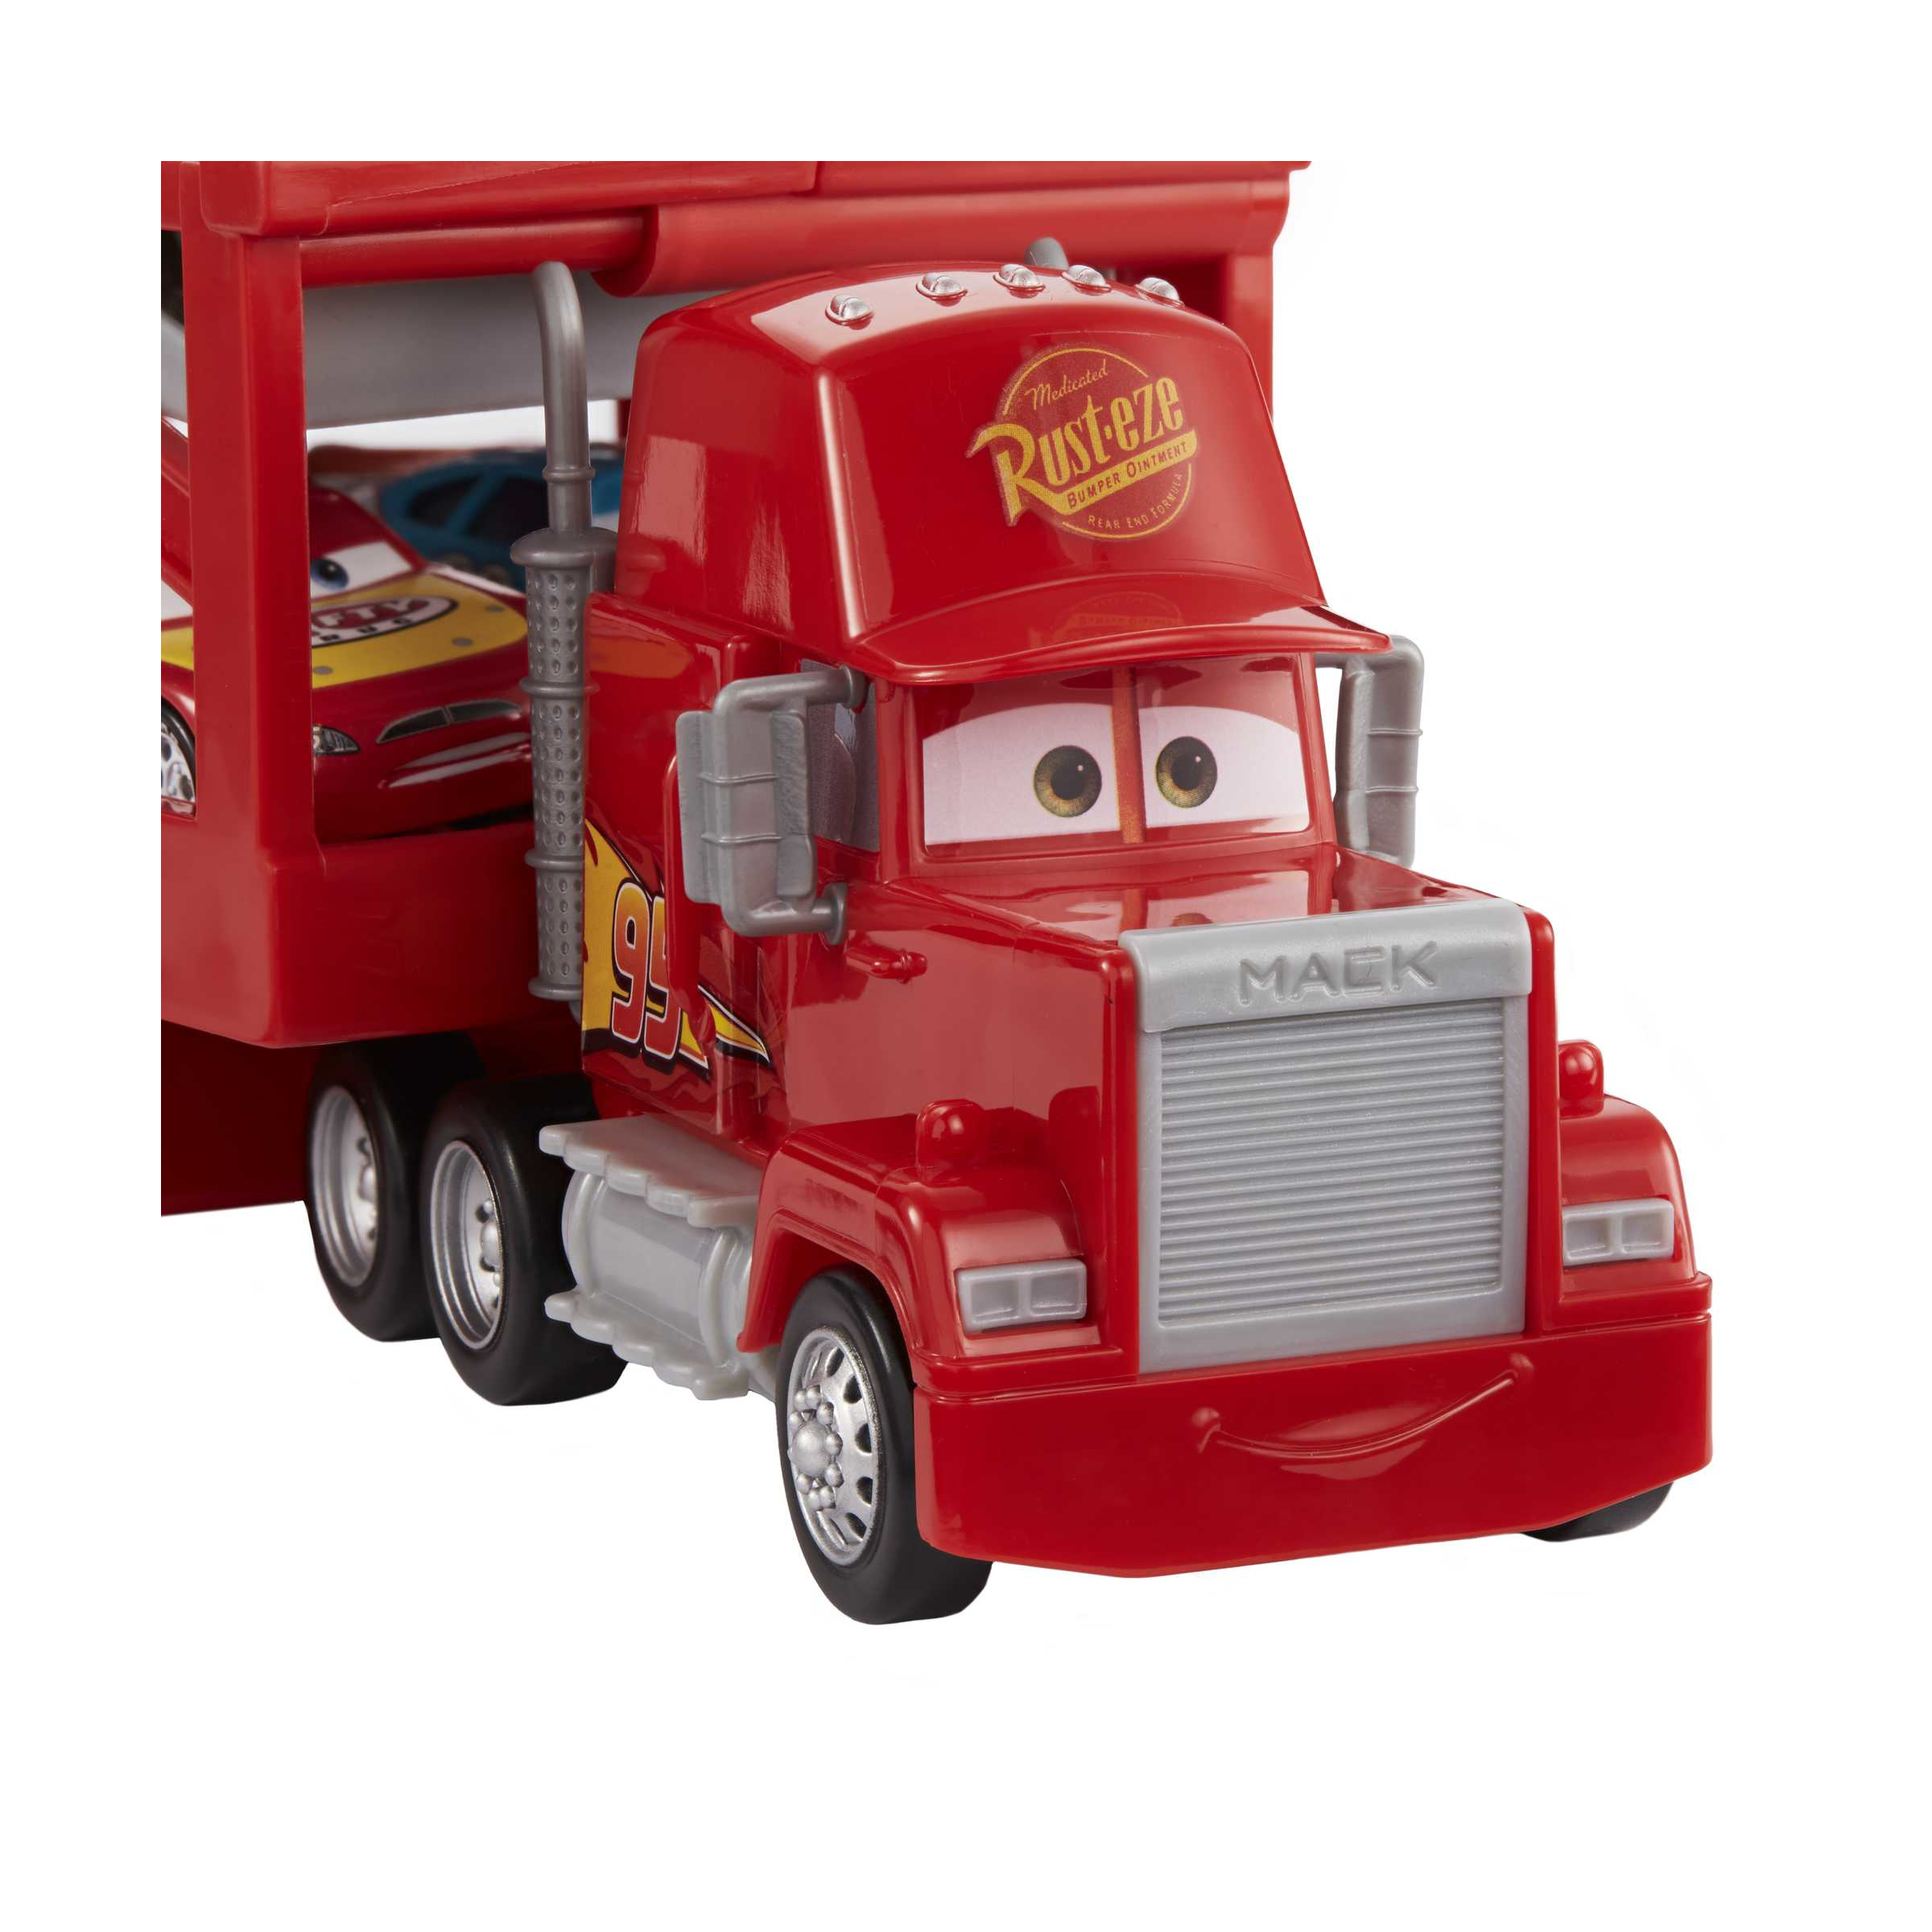 Disney pixar cars mack trasportatore, camion da 33 cm con rampa per trasportare 12 macchinine - Cars